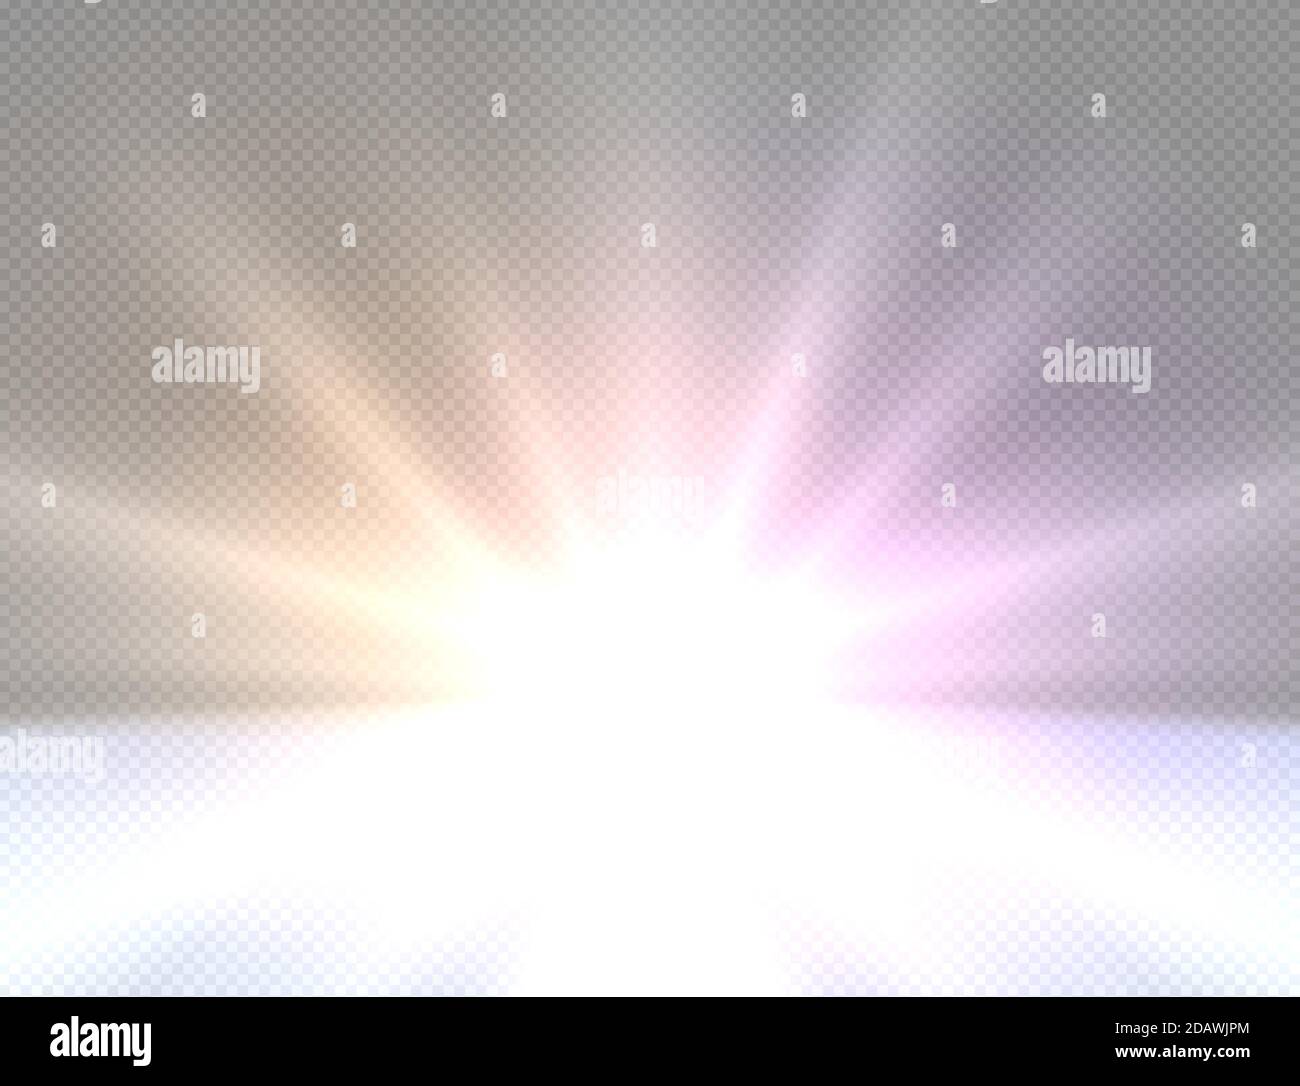 Abstraktes goldenes helles Licht. Weiß Glanz Burst Vektor-Illustration isoliert. Helle und glänzende Farbe Licht Stern. Lichteffekt transparenter Hintergrund Stock Vektor